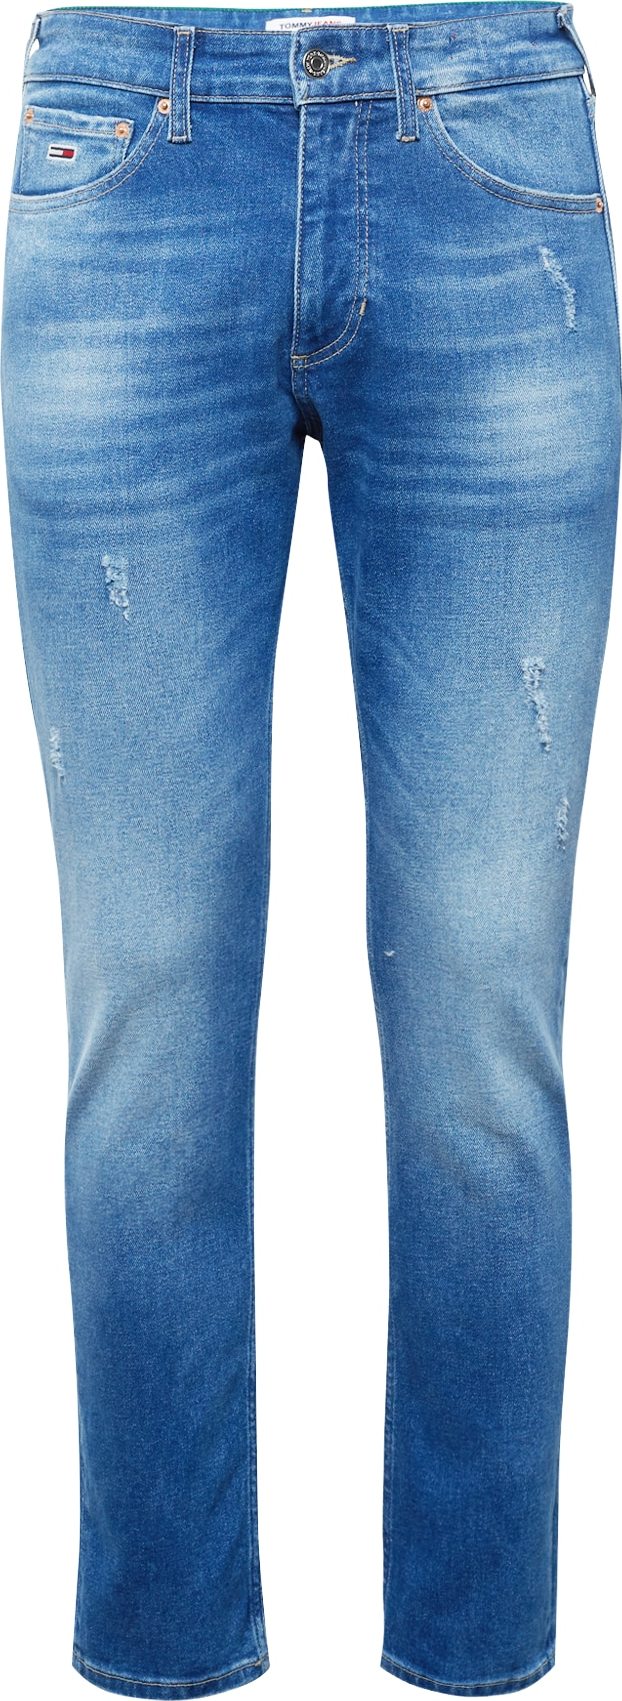 Džíny 'SCANTON' Tommy Jeans modrá džínovina